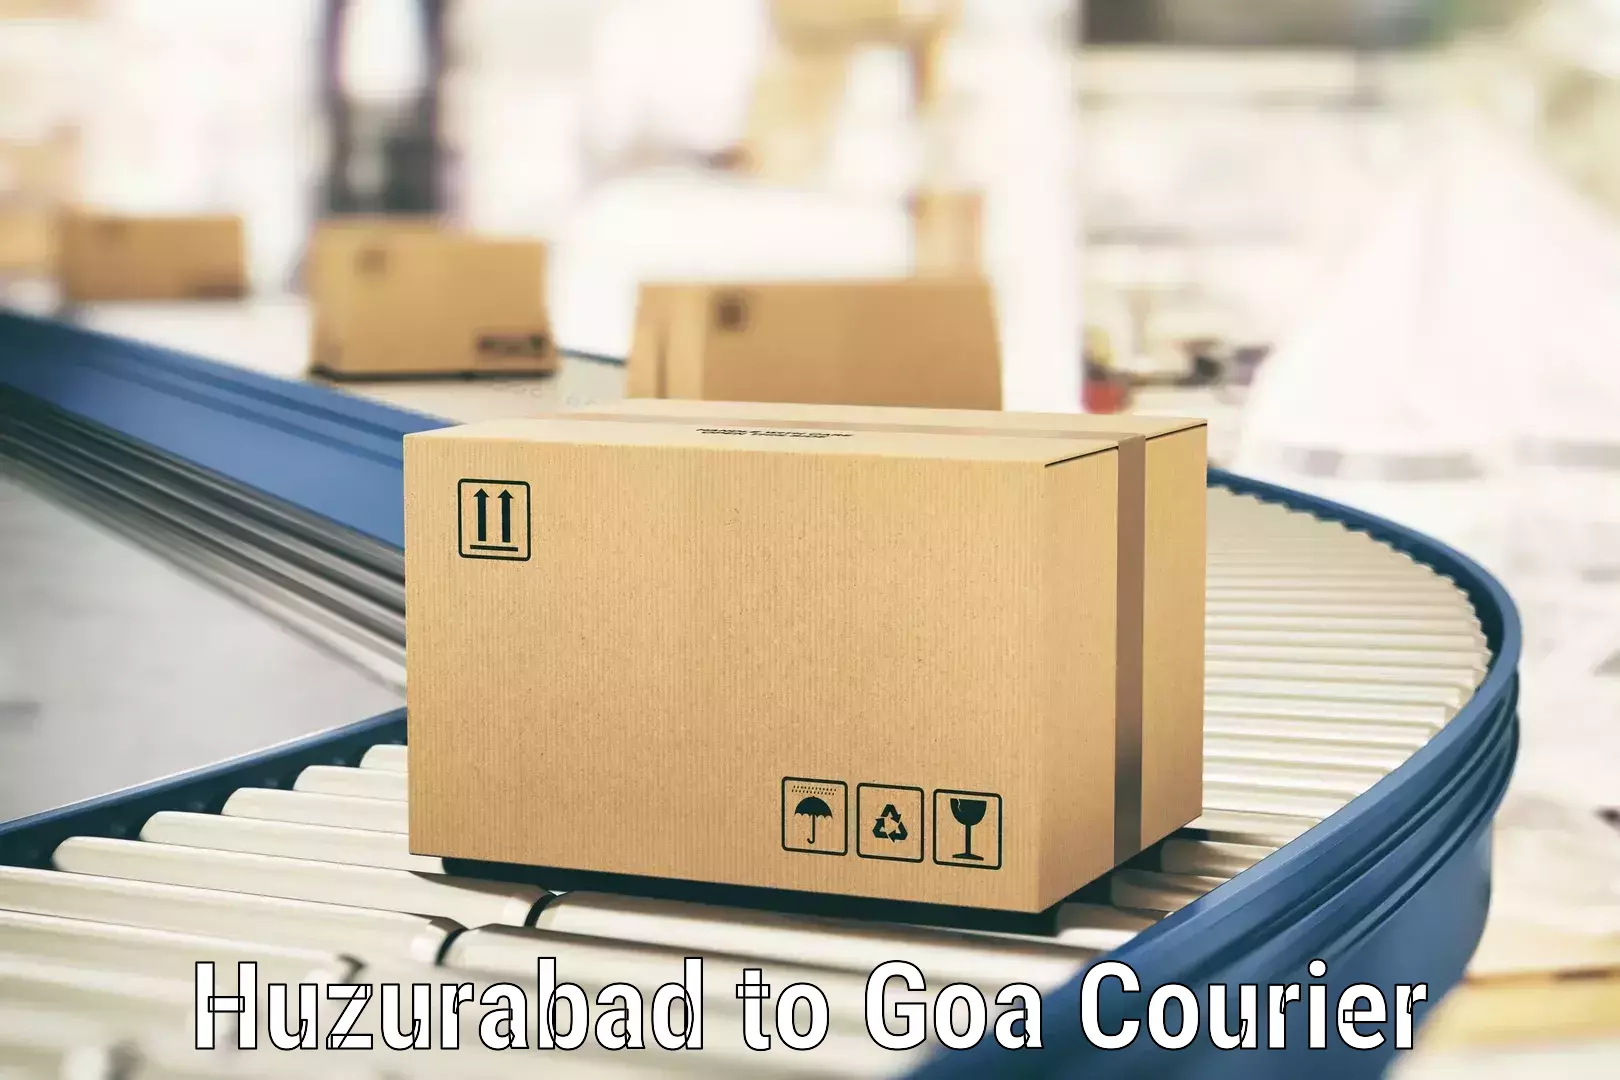 Cost-effective freight solutions Huzurabad to Panaji